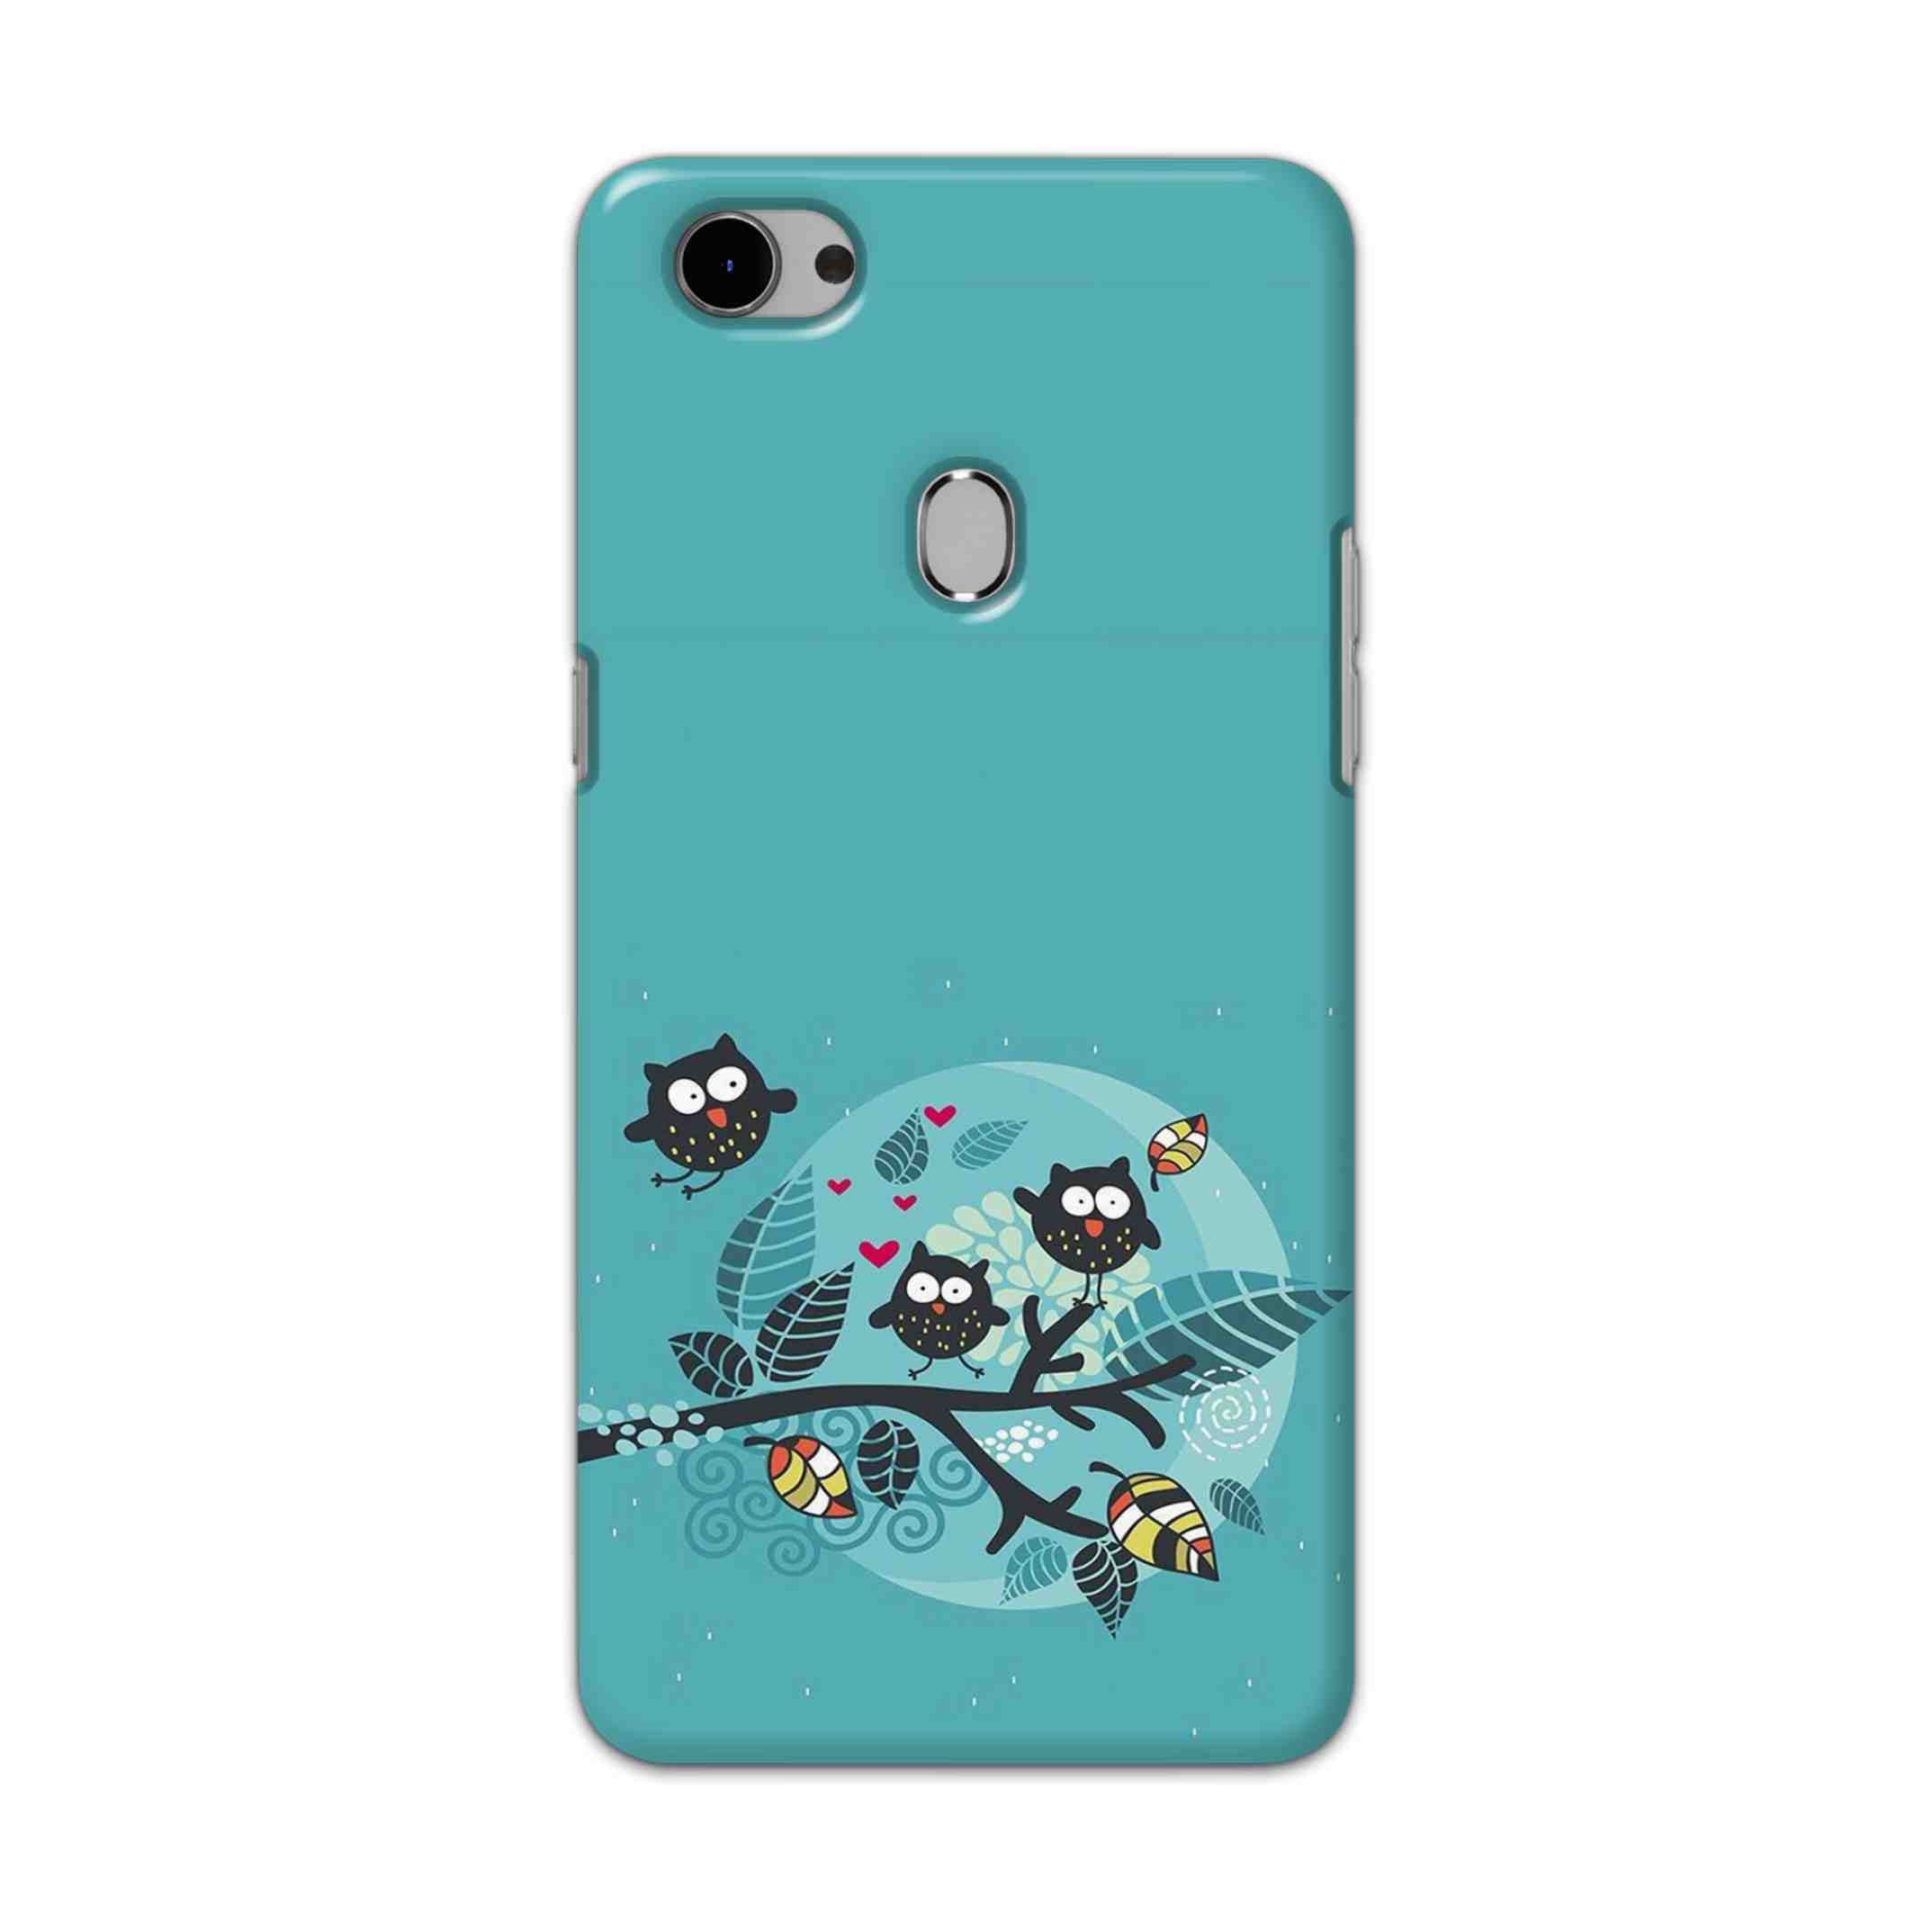 Buy Owl Hard Back Mobile Phone Case Cover For Oppo F7 Online